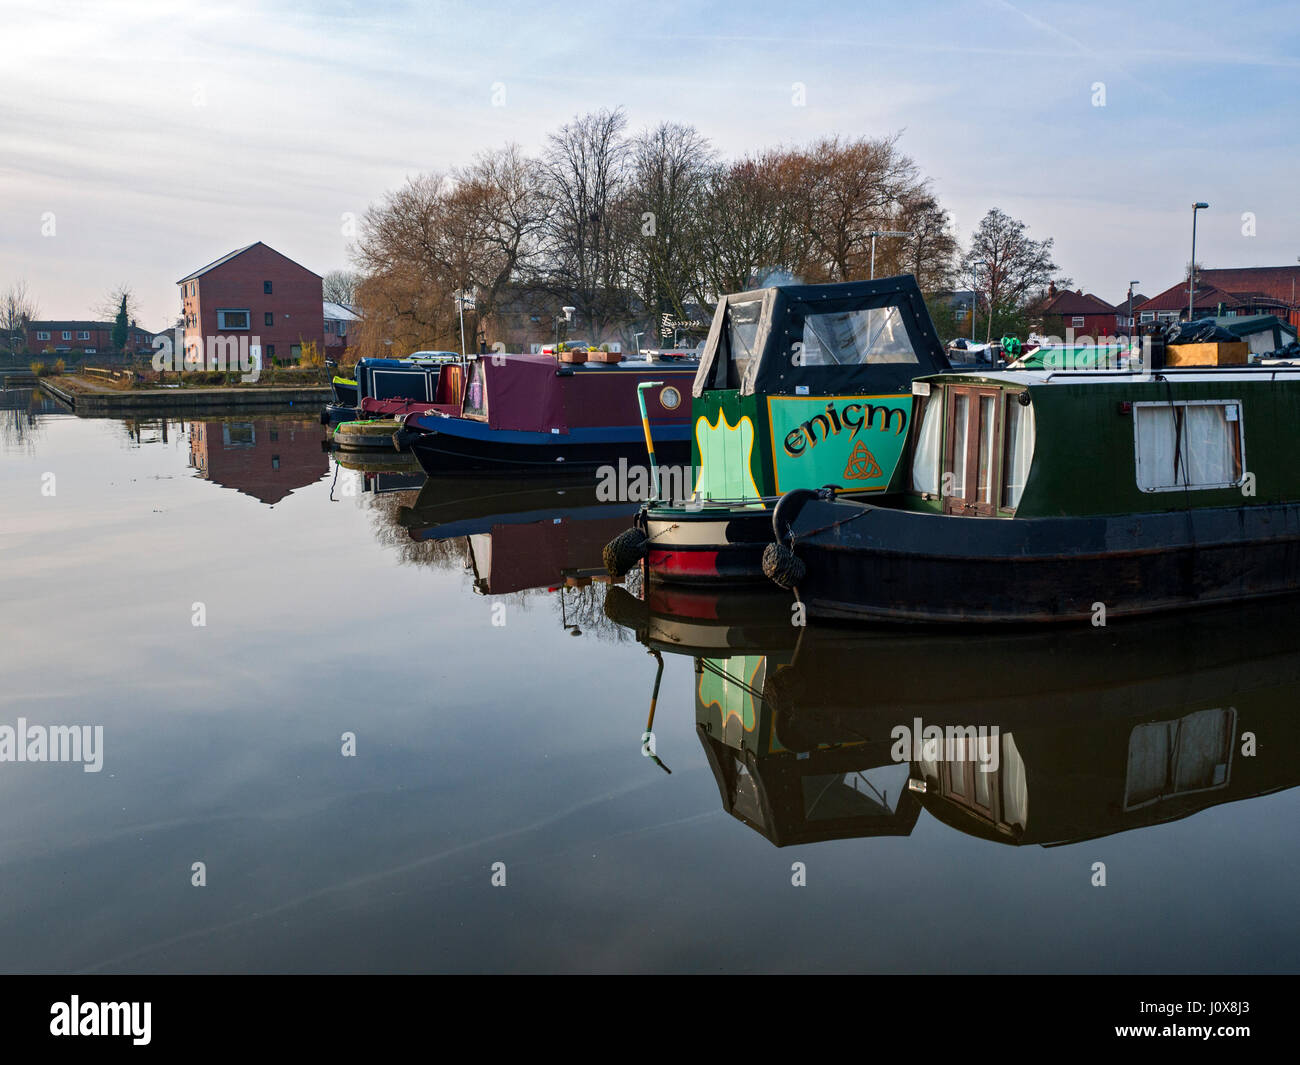 Narrowboats moored at Droylsden Marina on the Ashton Canal, Droylsden, Tameside, Manchester, England, UK Stock Photo